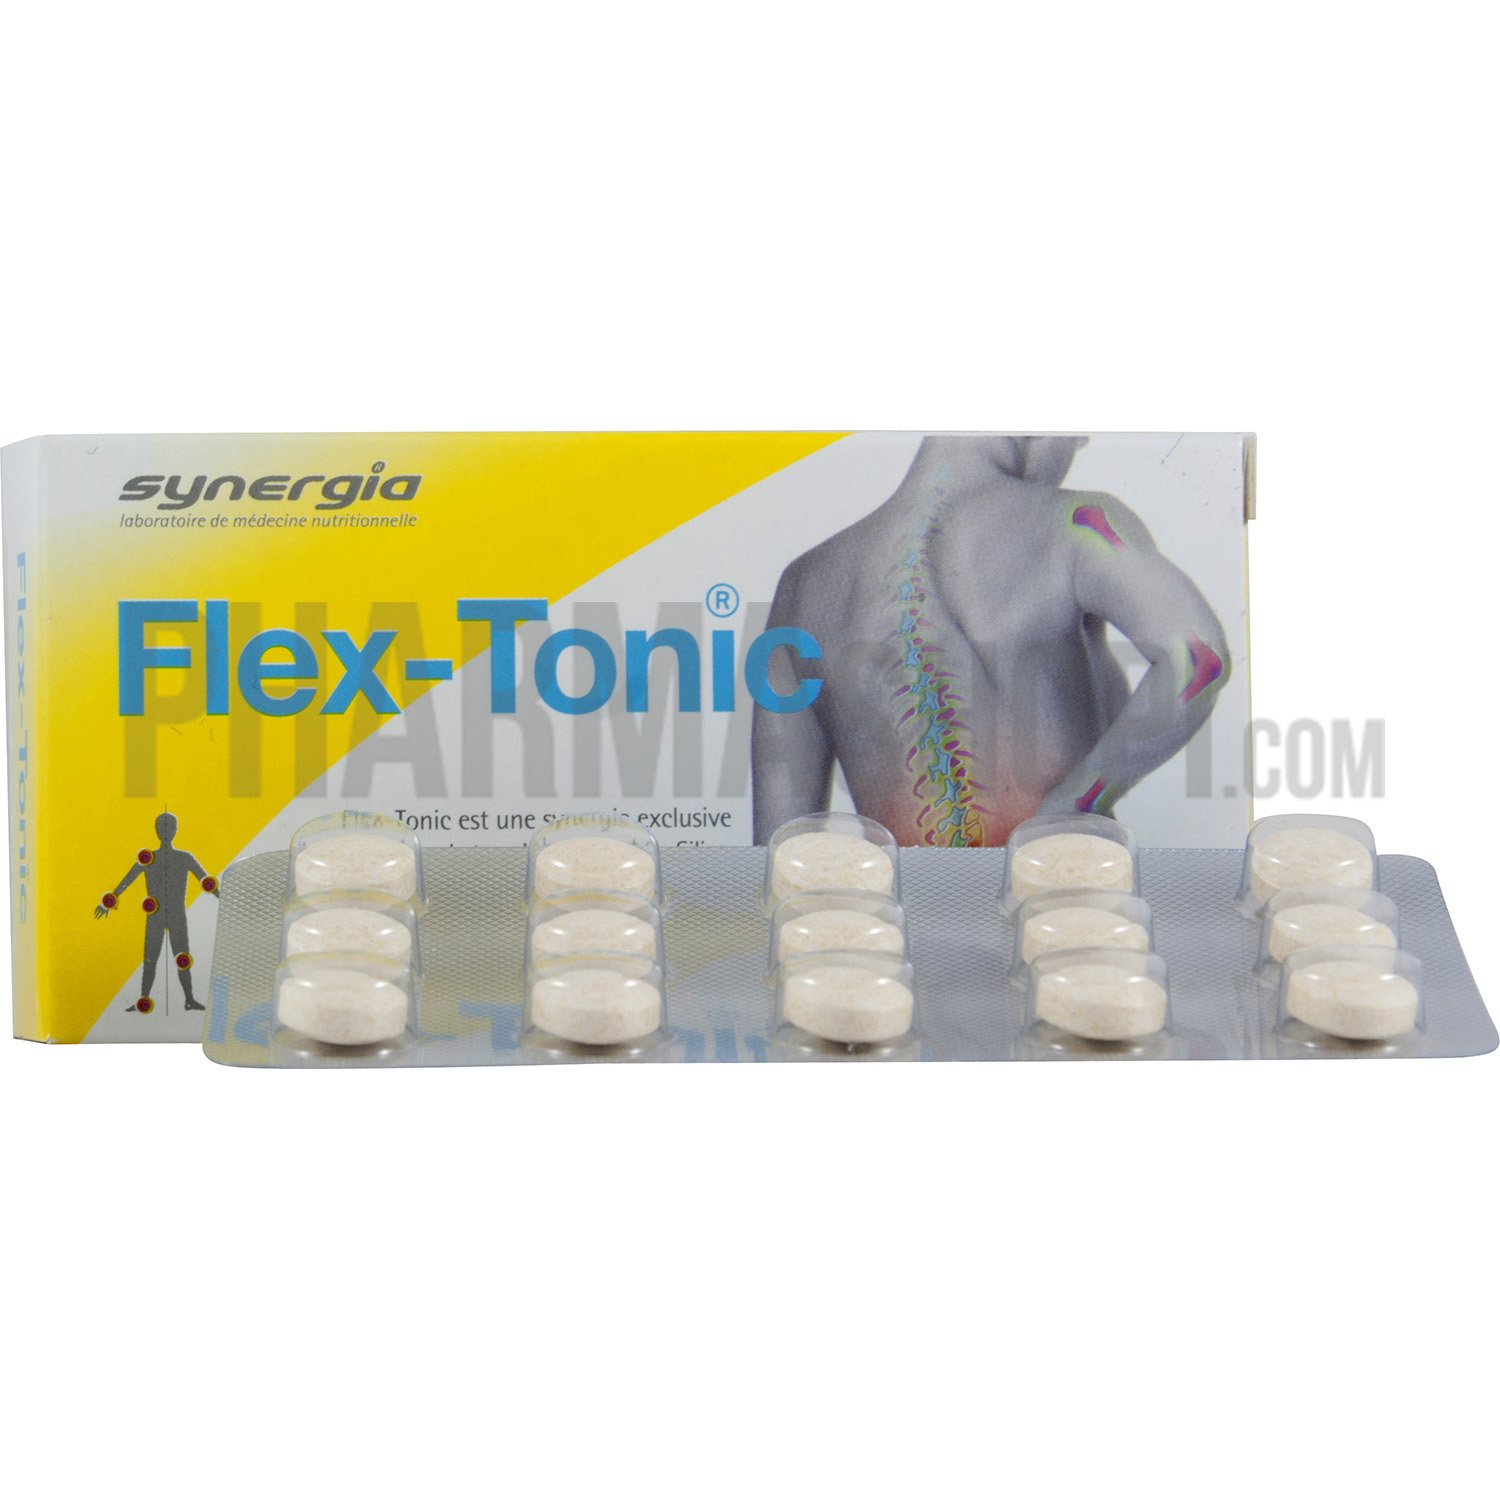 Flex-tonic Synergia - boite de 30 comprimés